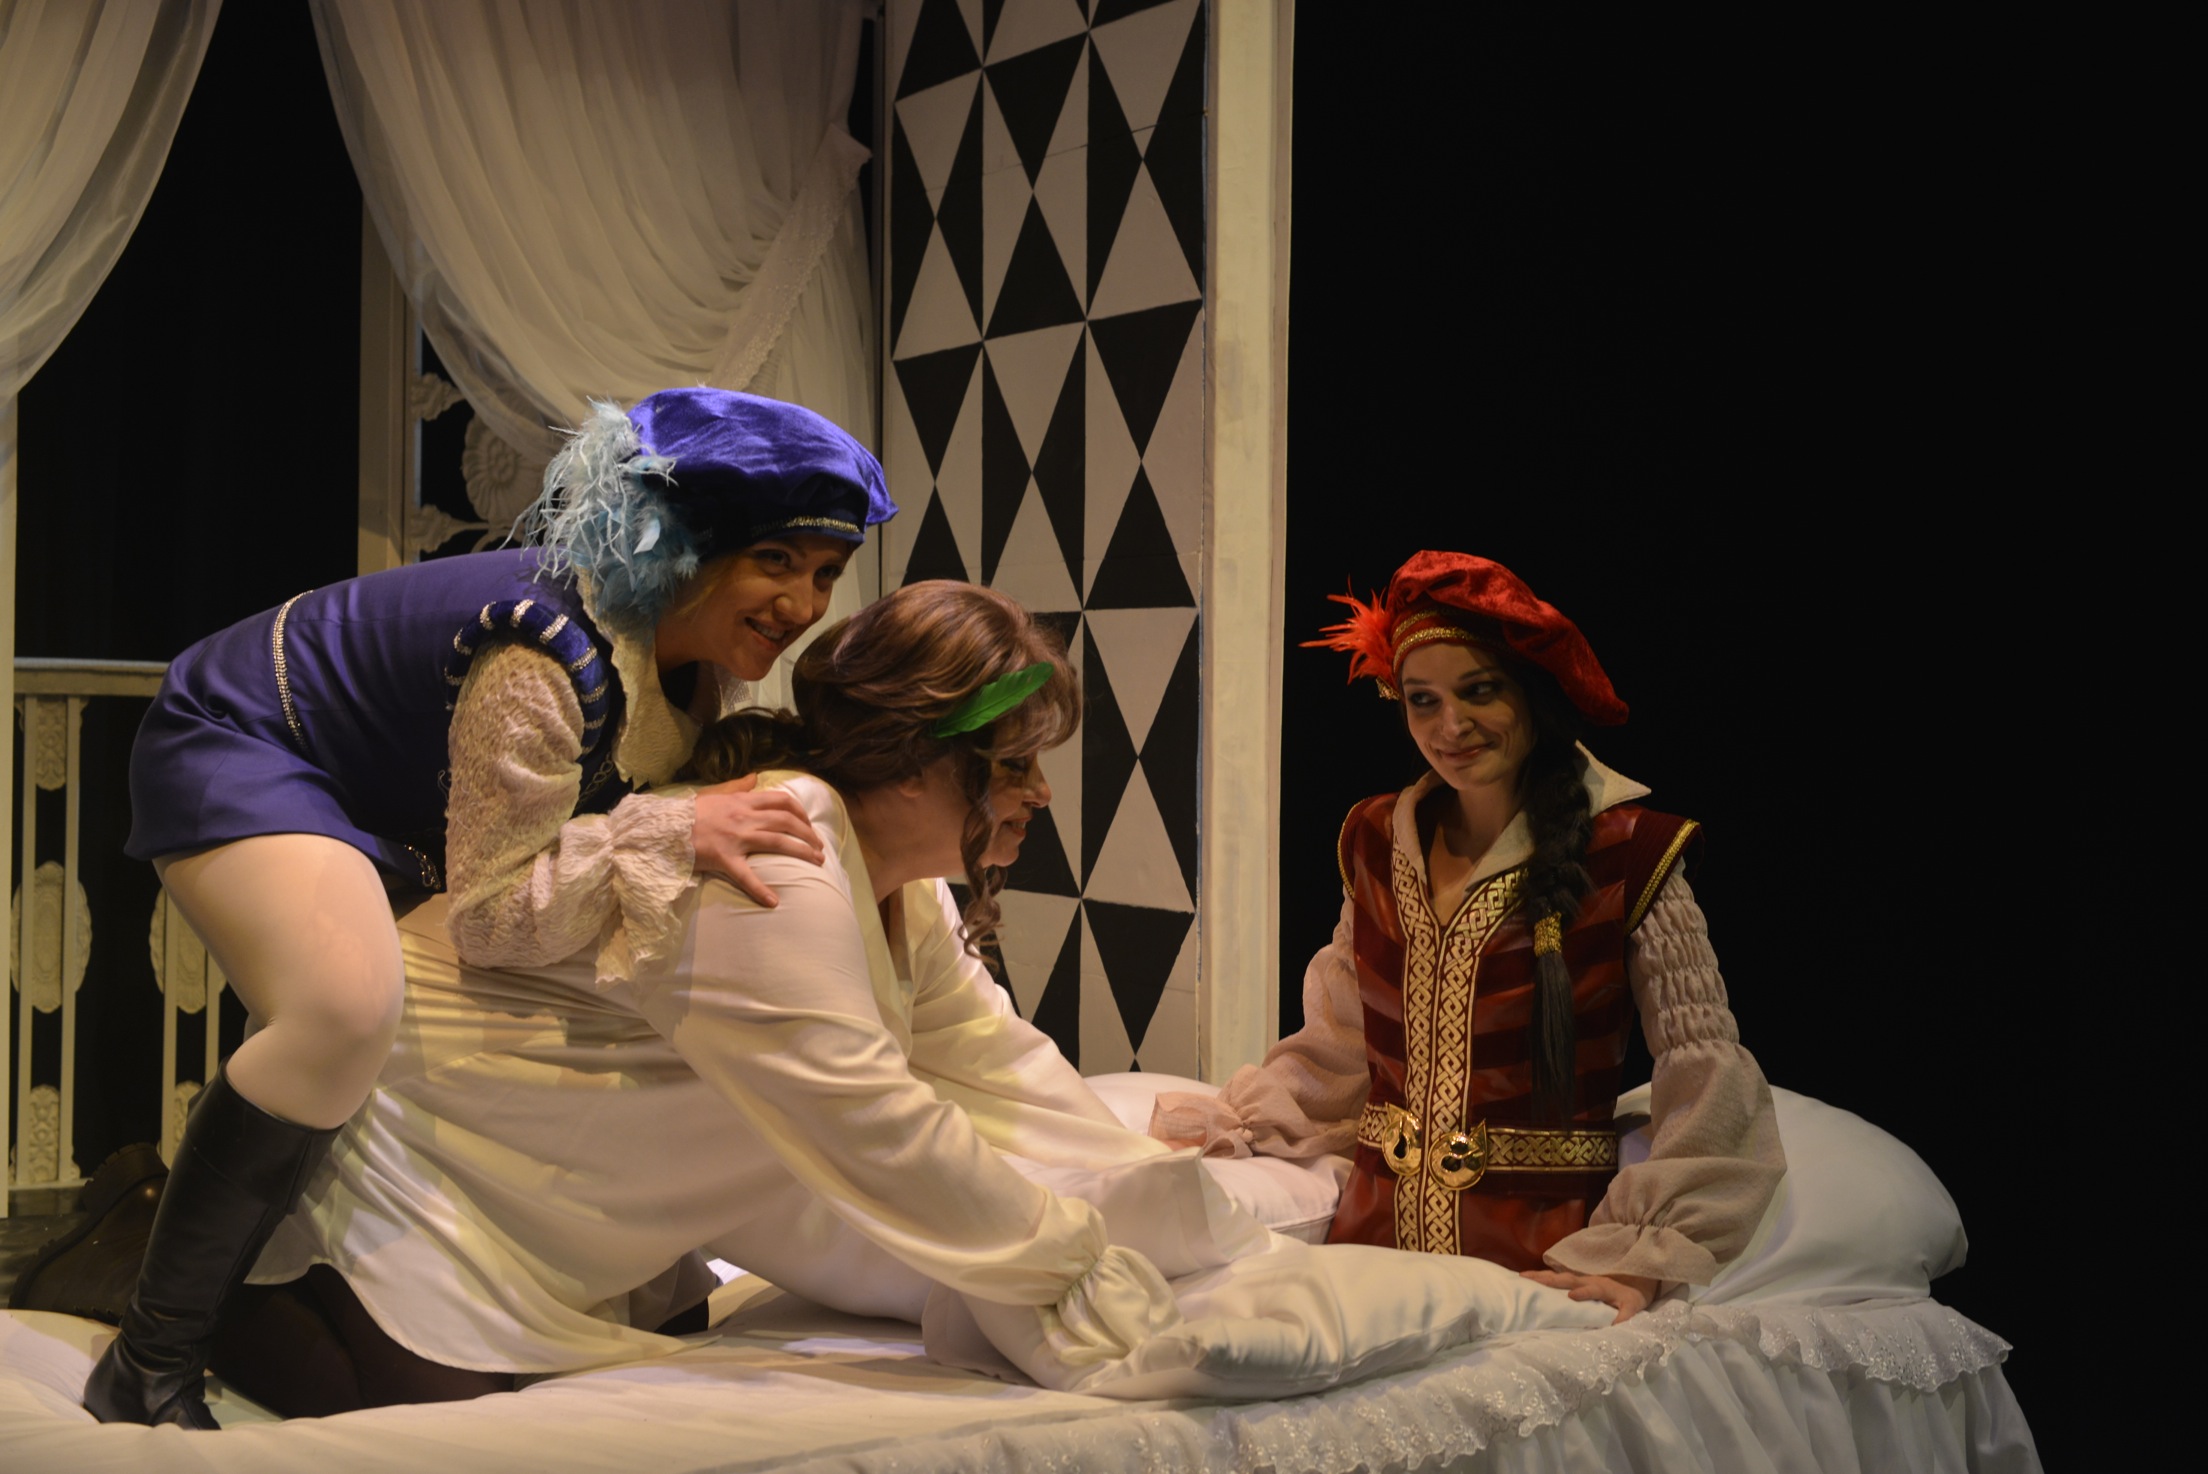  İyi Geceler Desdemona, Günaydın Juliet, Shakespeare'in 450'inci doğum günü